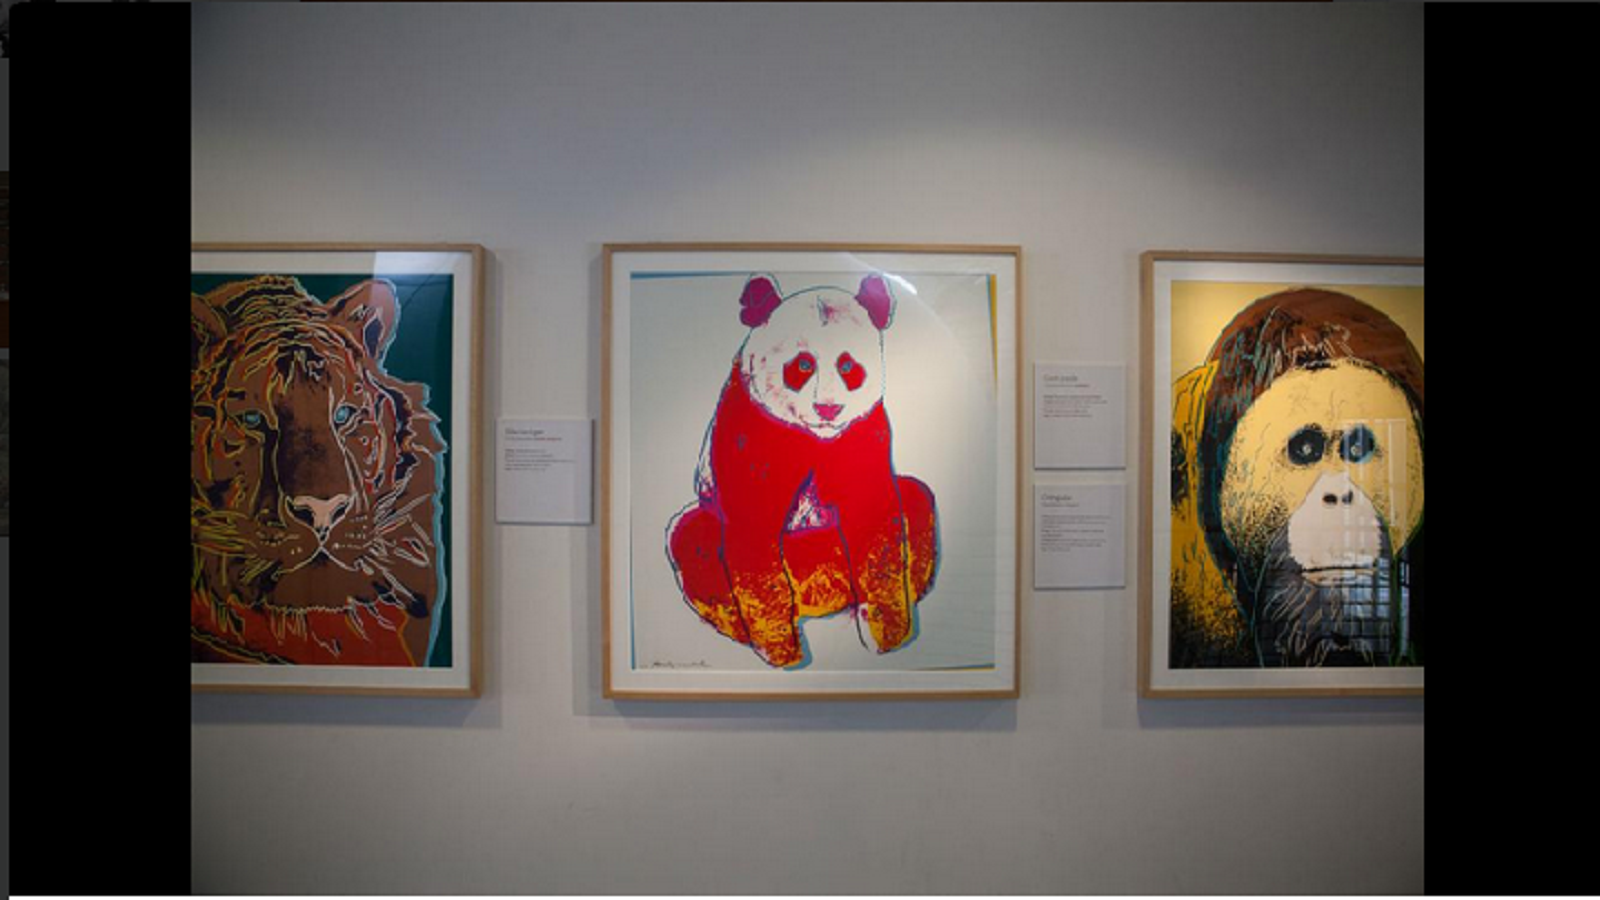 هل تعلم أن الرسومات المعلقة في الطابق 3 في متحف أكاديمية كاليفورنيا هي للرسام آندي وارهول؟